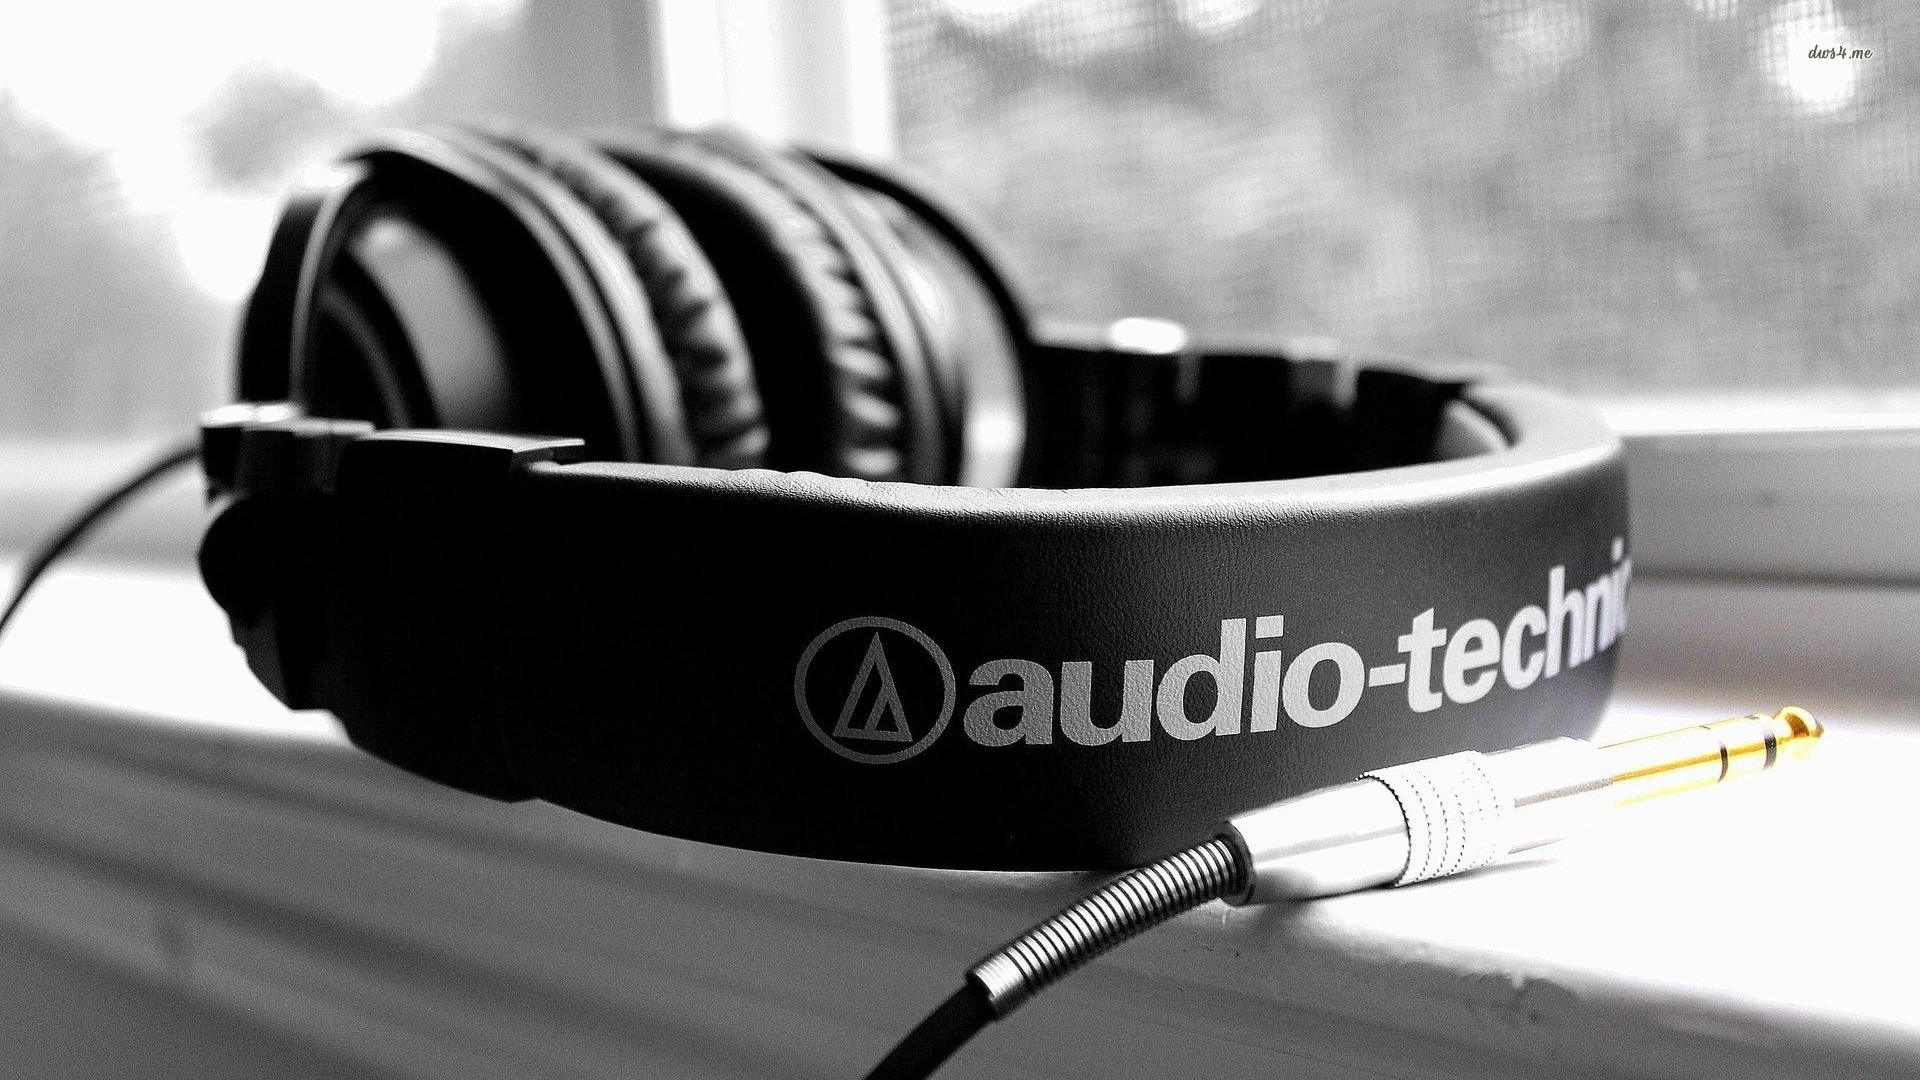 headphones, Audio technica Wallpapers HD / Desktop and Mobile Backgrounds